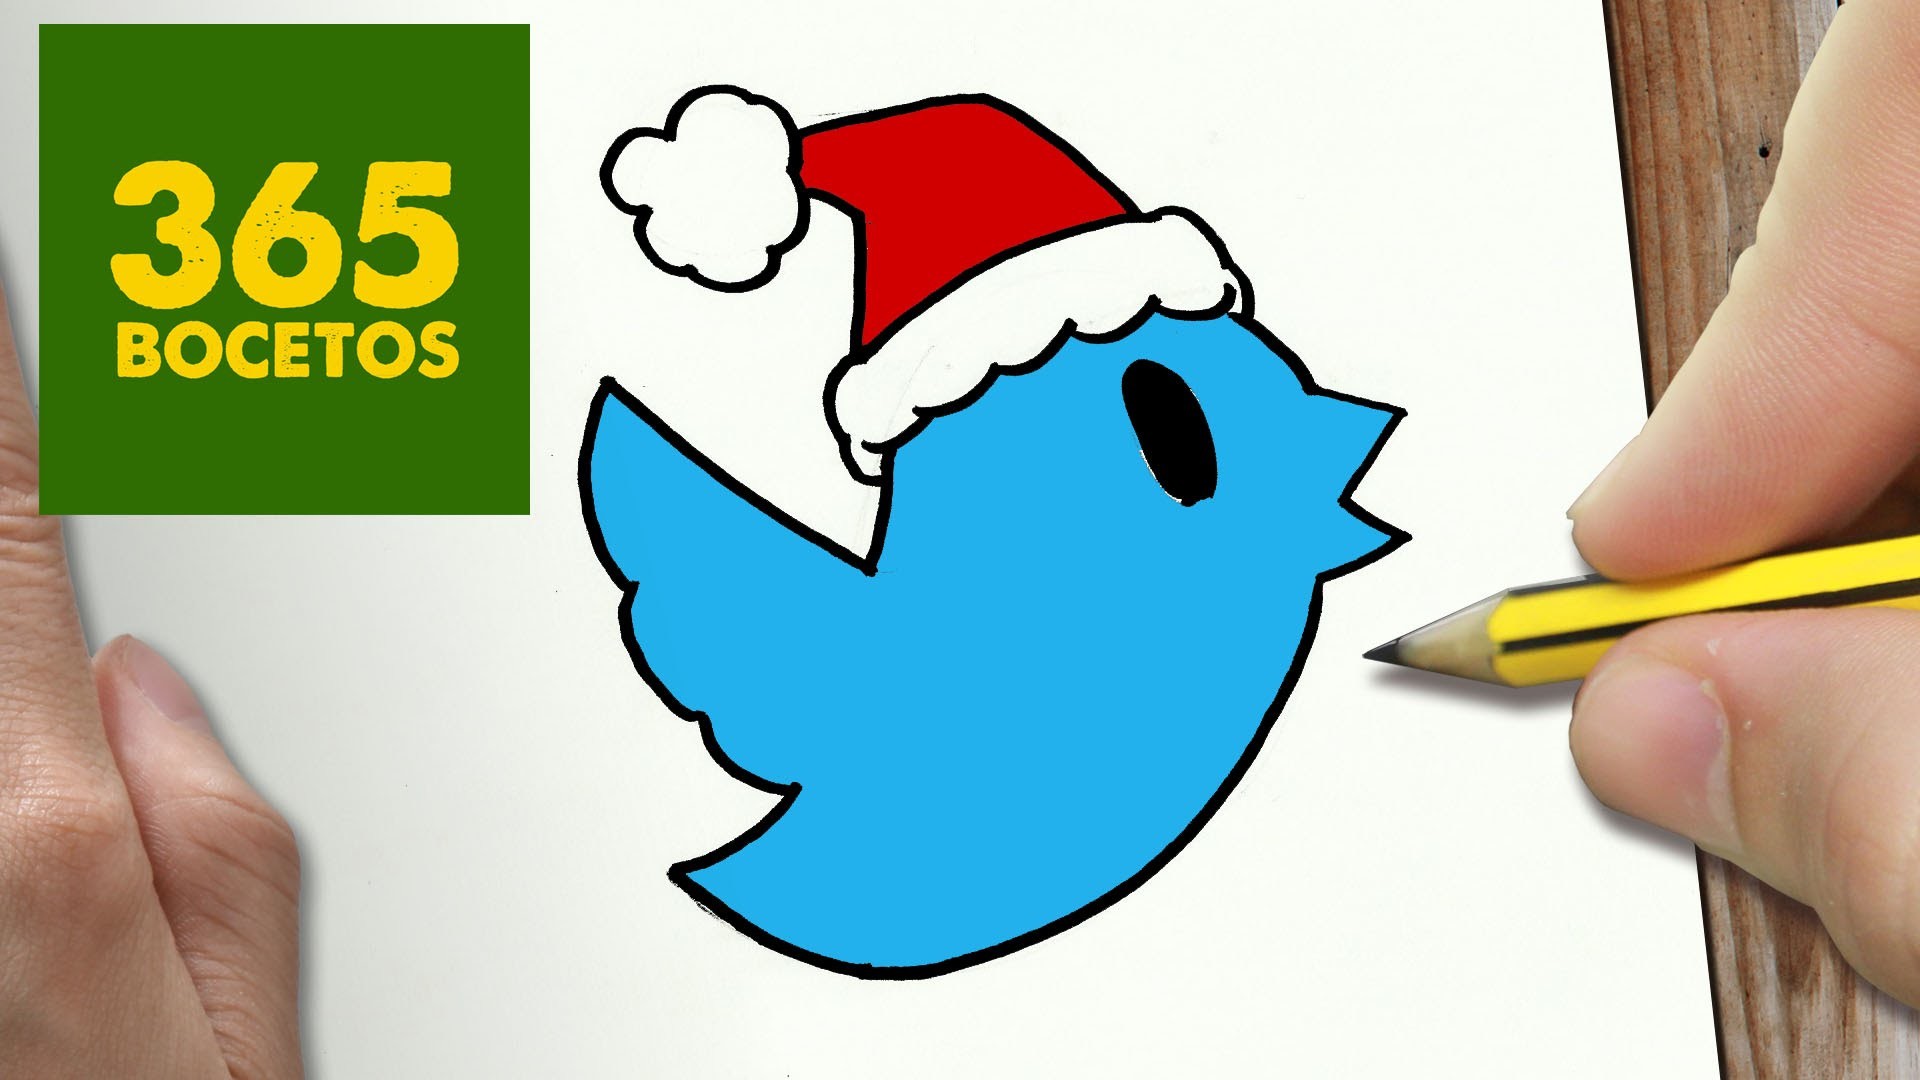 COMO DIBUJAR UN TWITTER PARA NAVIDAD PASO A PASO: Dibujos kawaii navideños - How to draw a Twitter